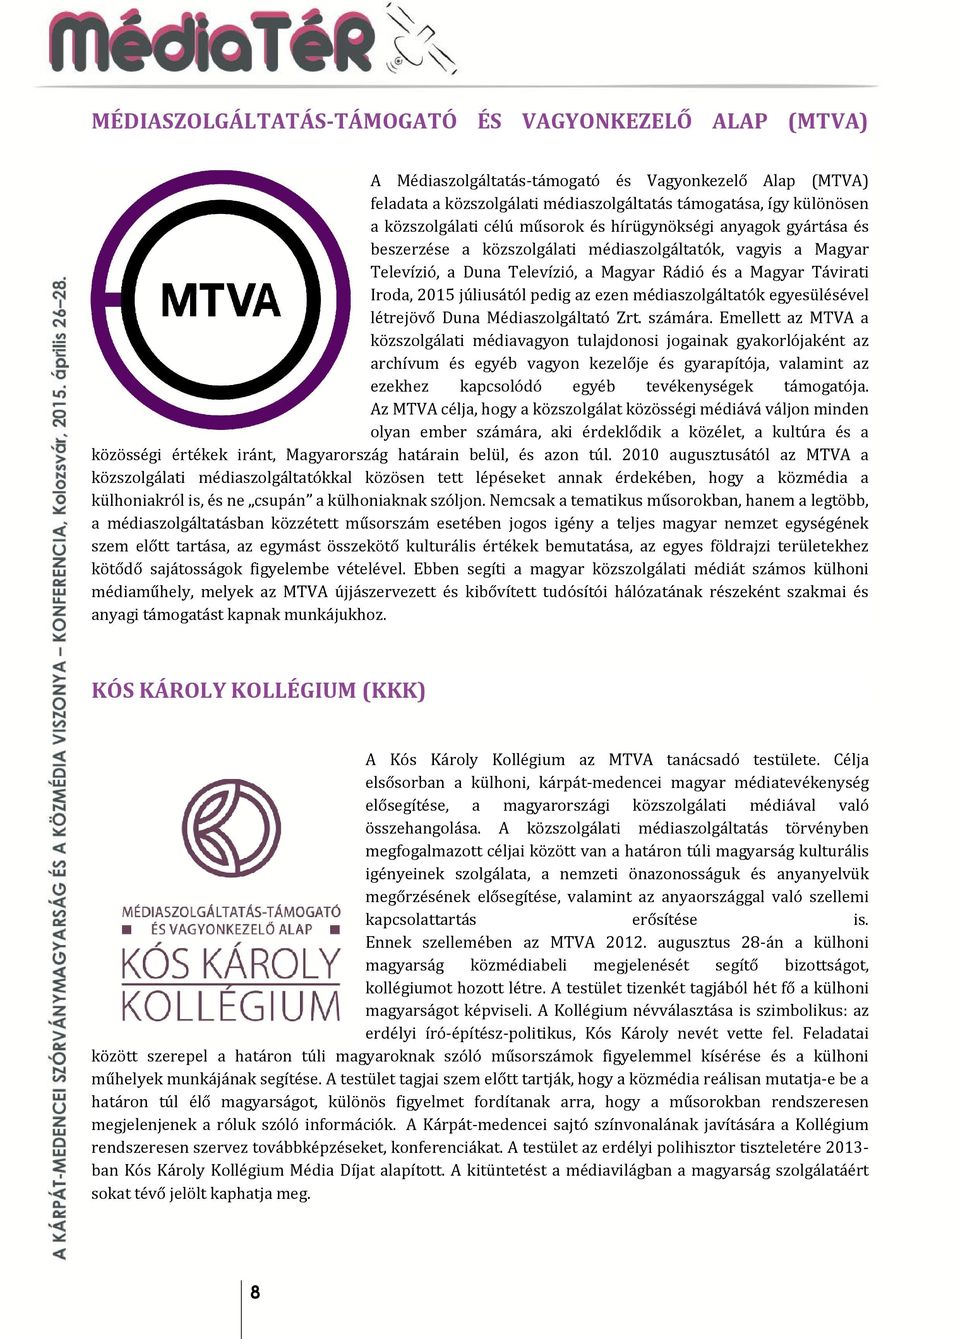 pedig az ezen médiaszolgáltatók egyesülésével létrejövő Duna Médiaszolgáltató Zrt. számára.